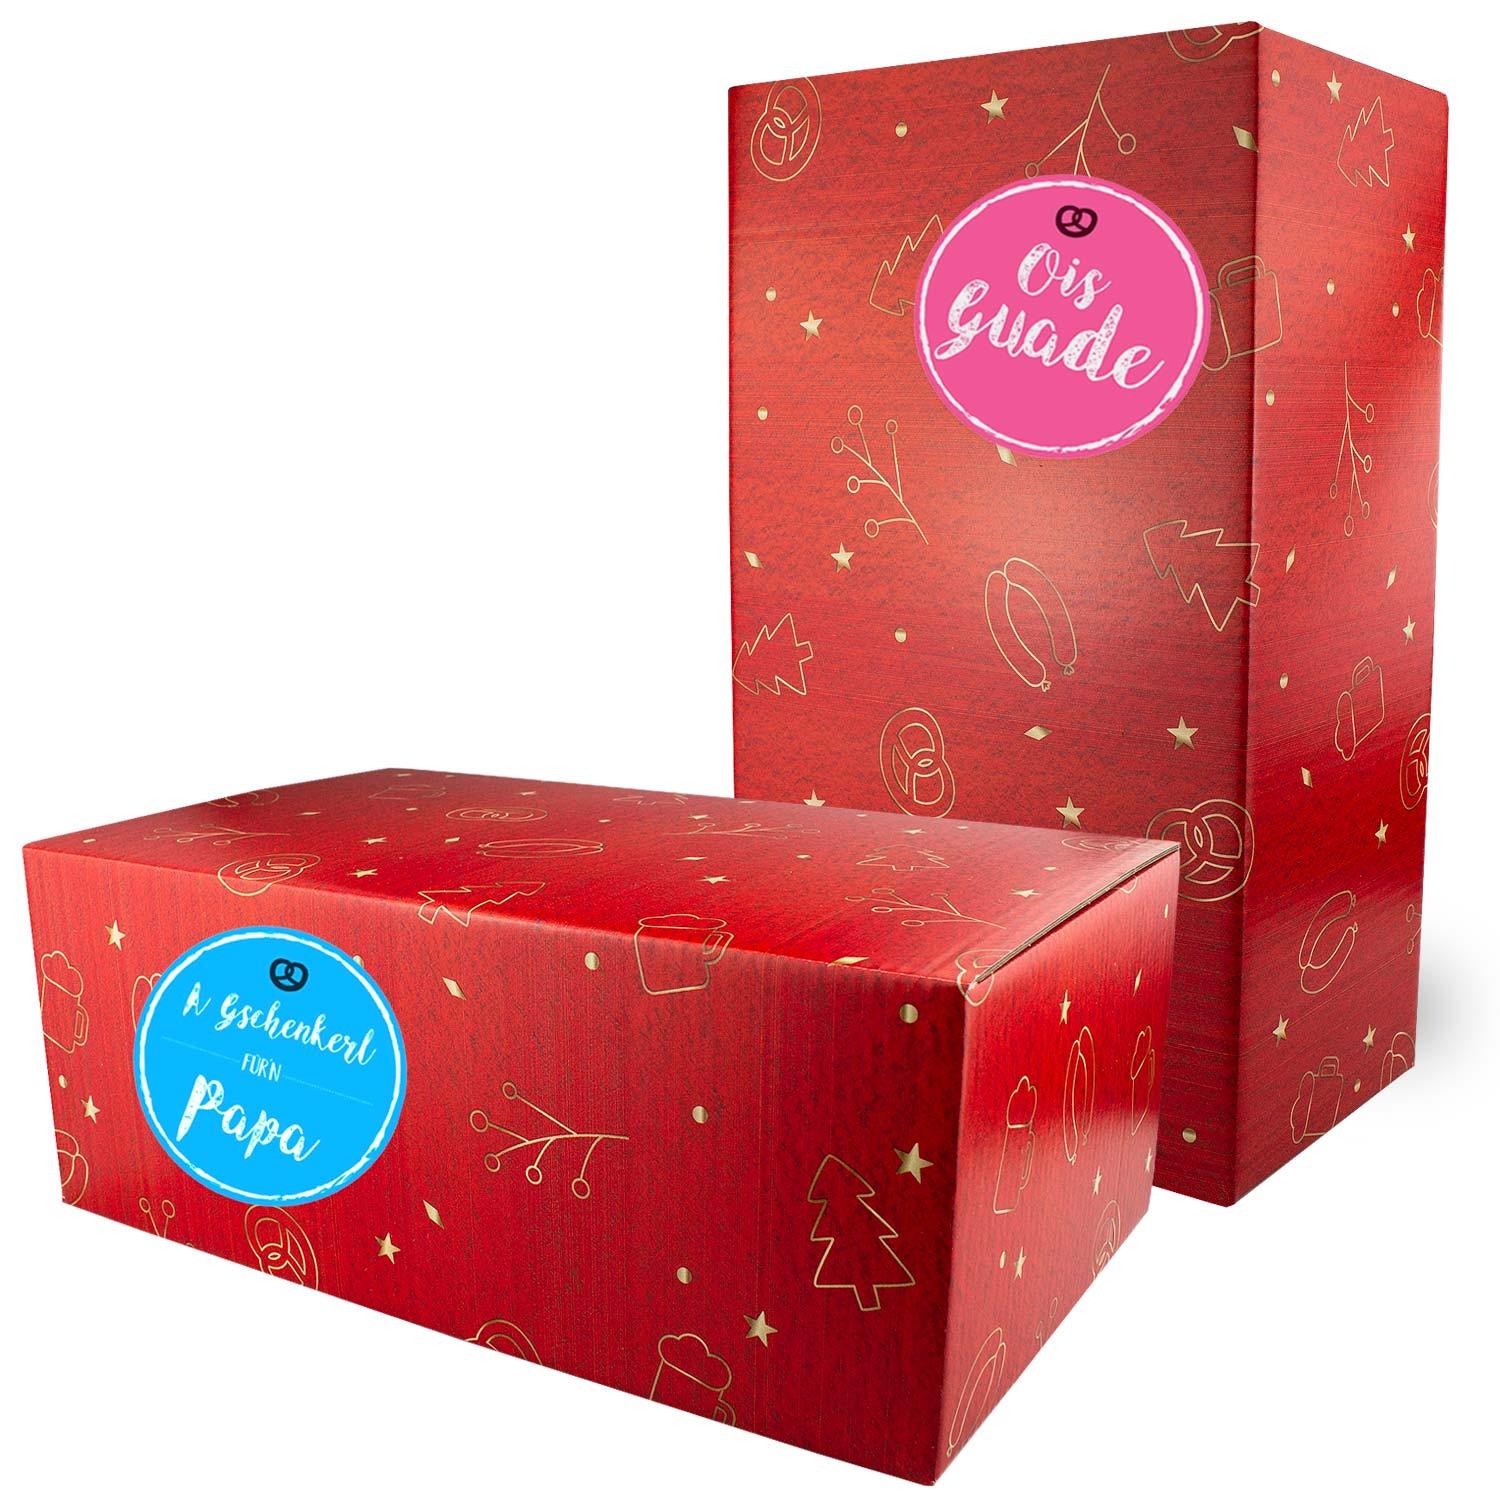 Weihnachtsbox "Weihnachtsfeier Glühwein" - bavariashop - mei LebensGfui